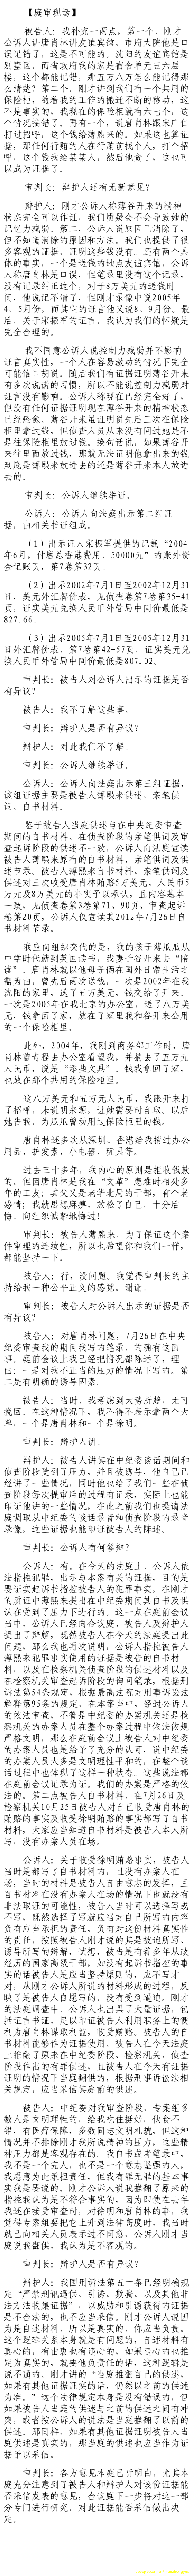 济南市中级法院官方微博公布的8月22日庭审现场记录（5）